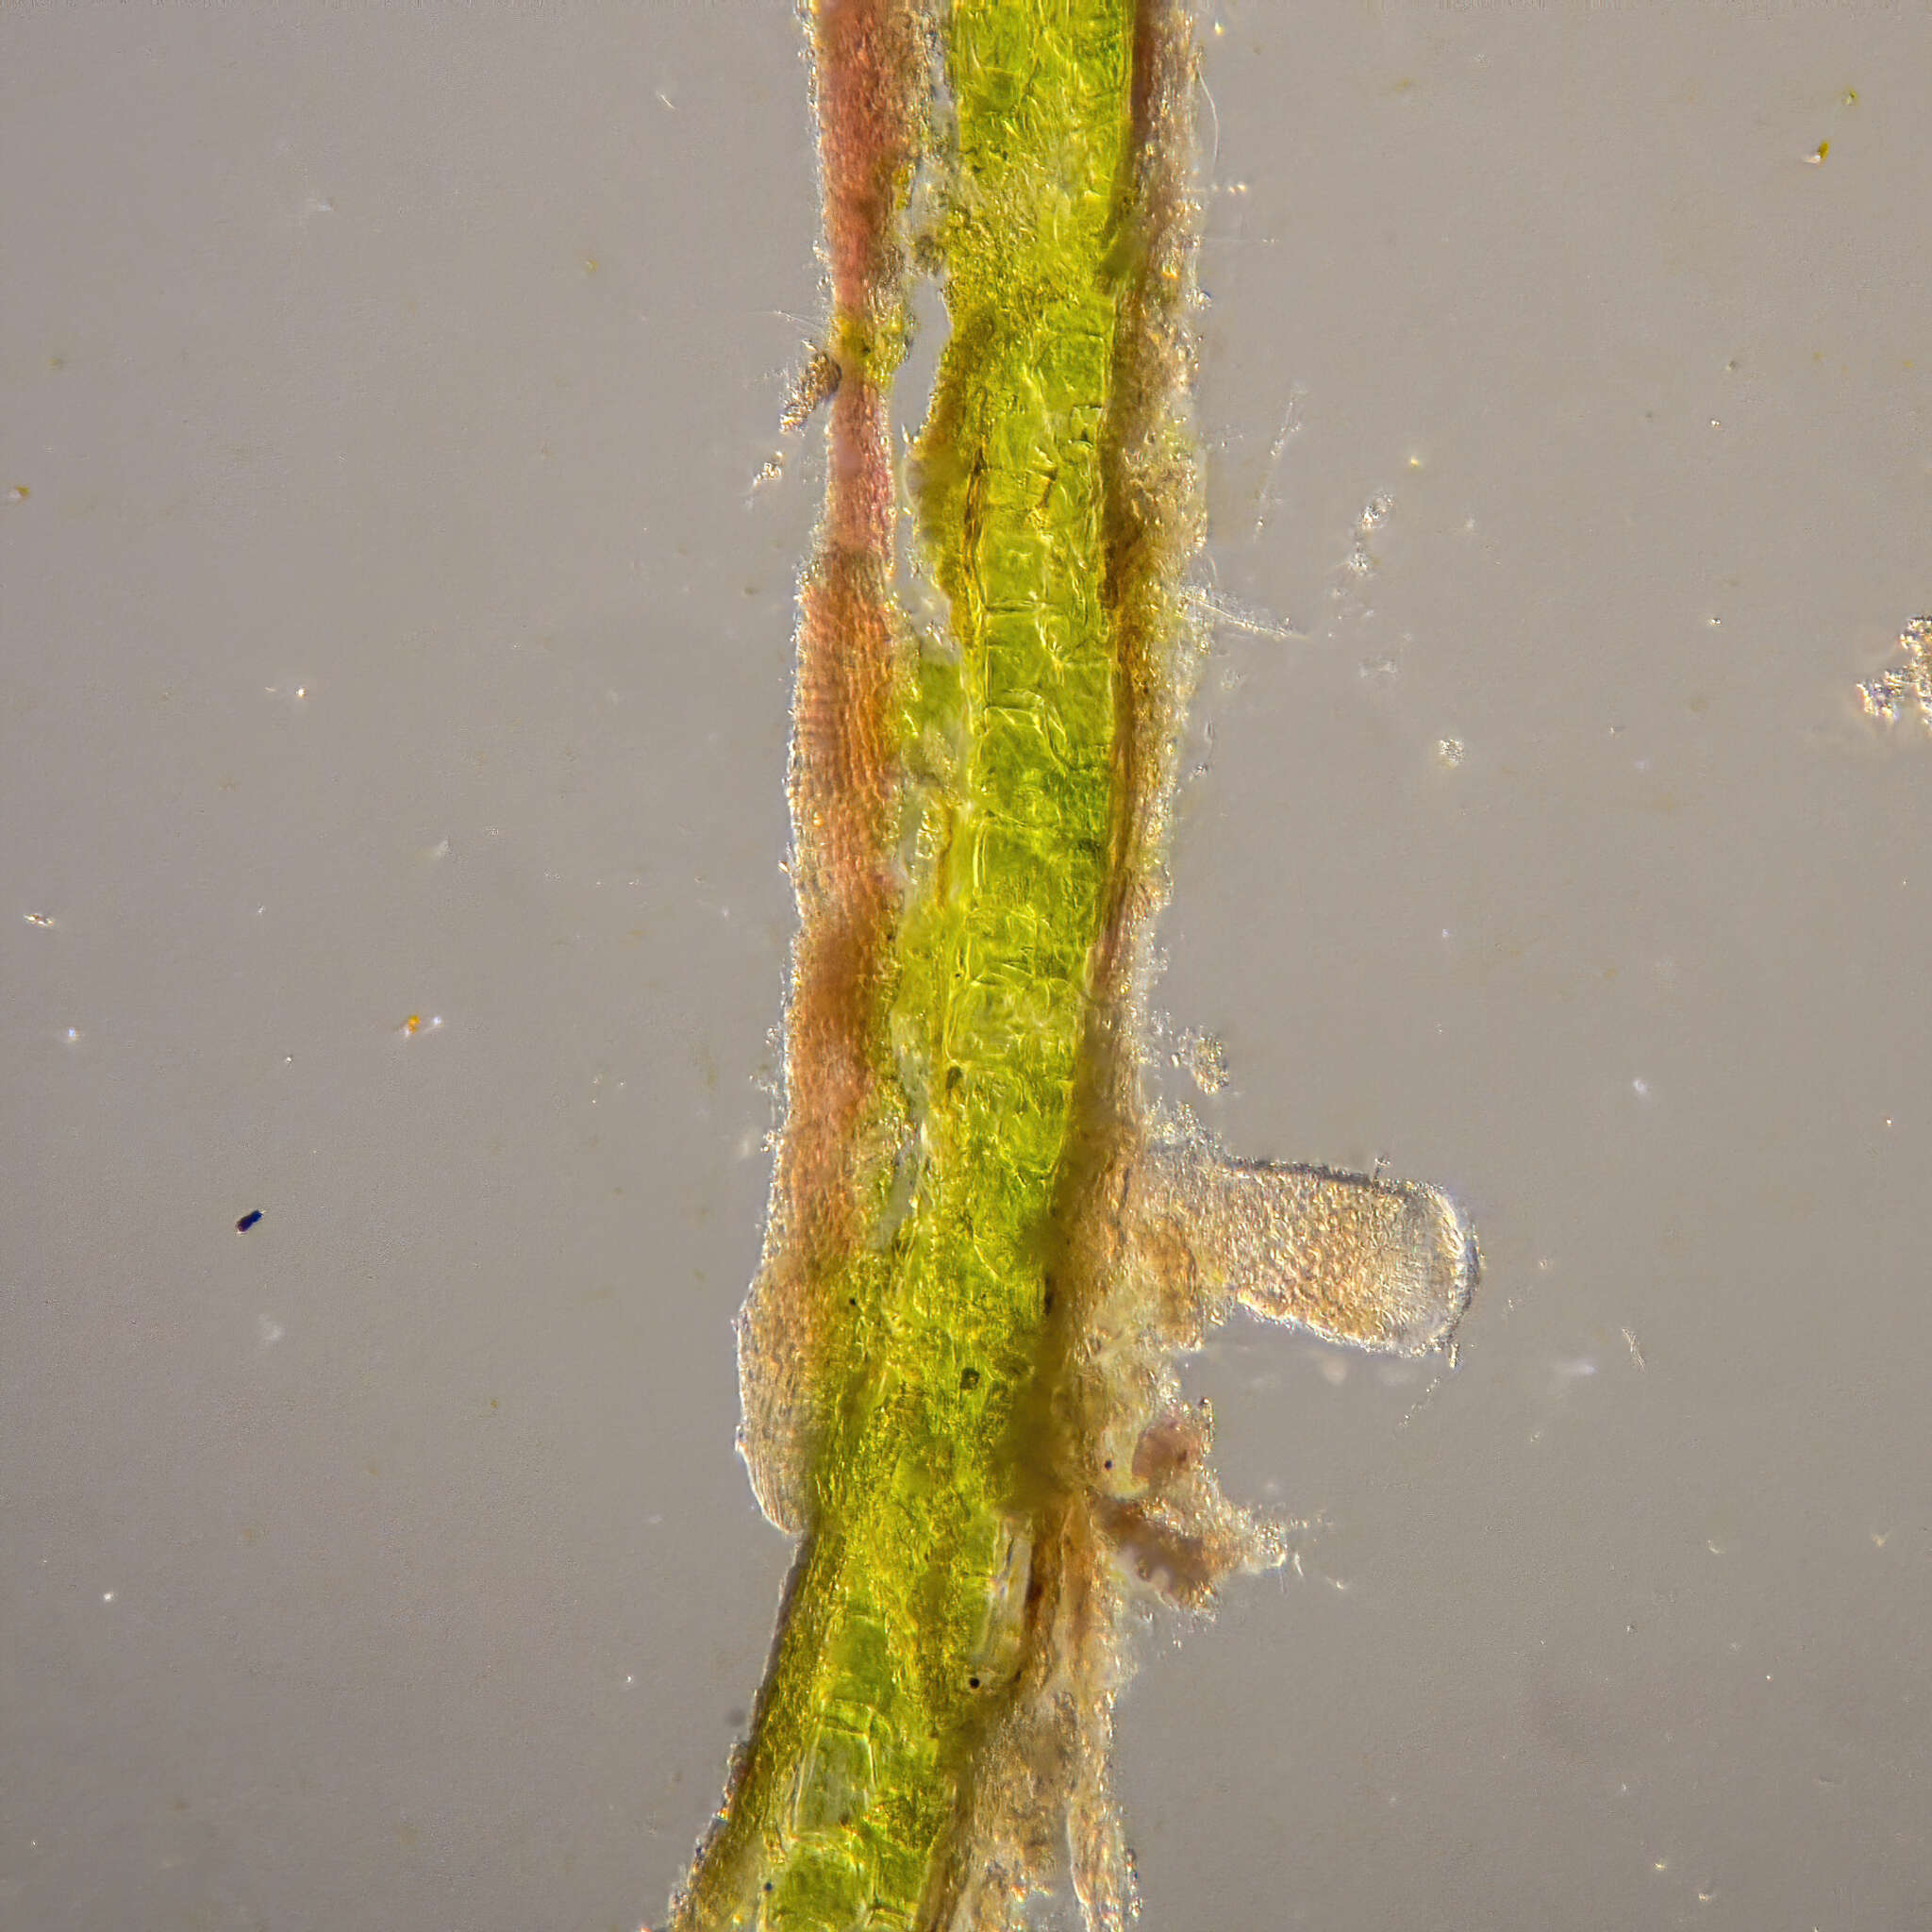 Image of Halophila australis Doty & B. C. Stone